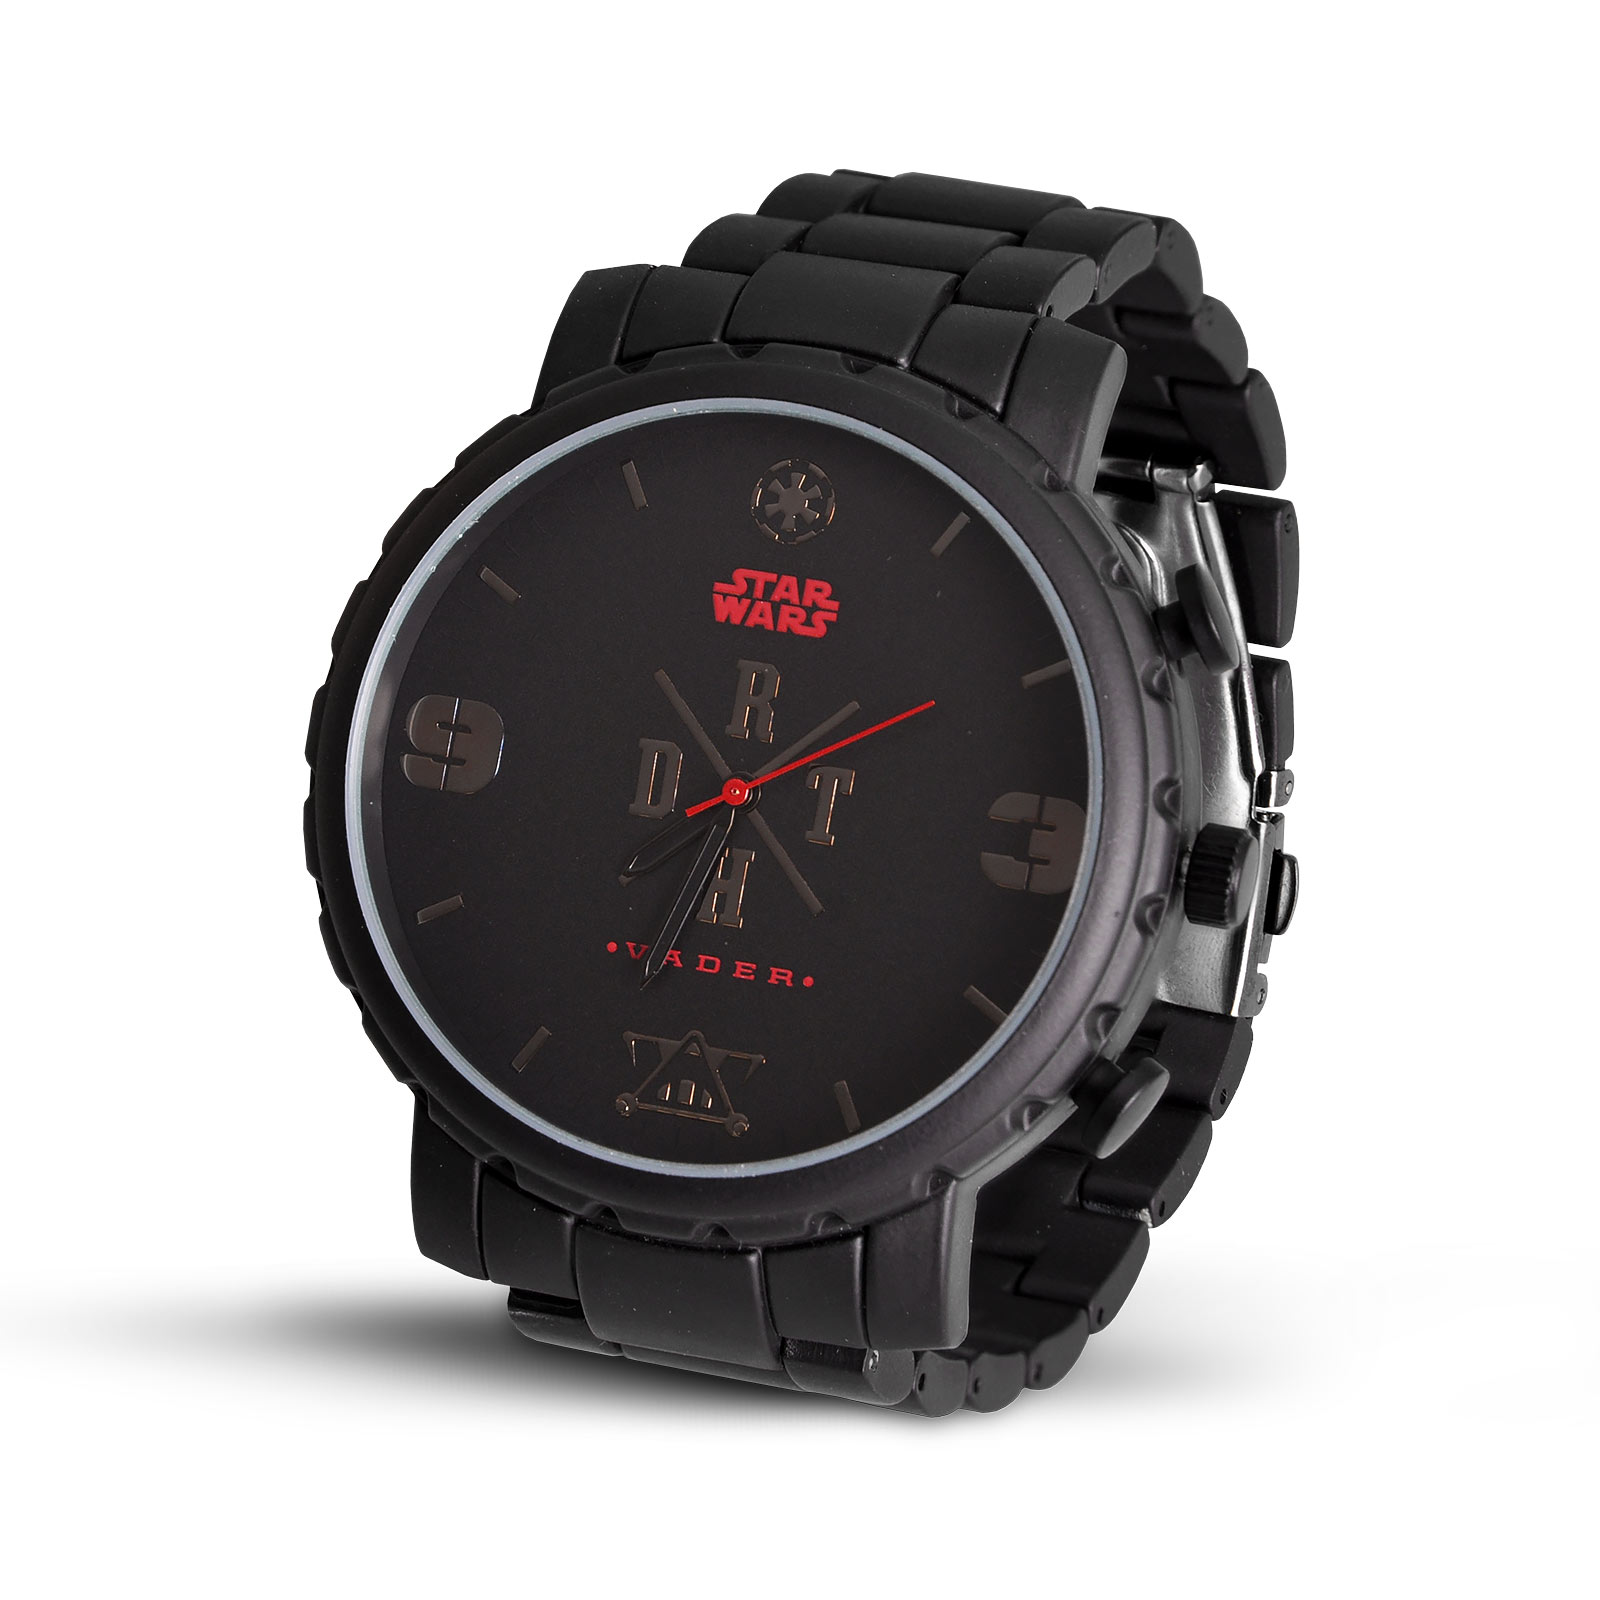 Star Wars - Darth Vader Wristwatch Black